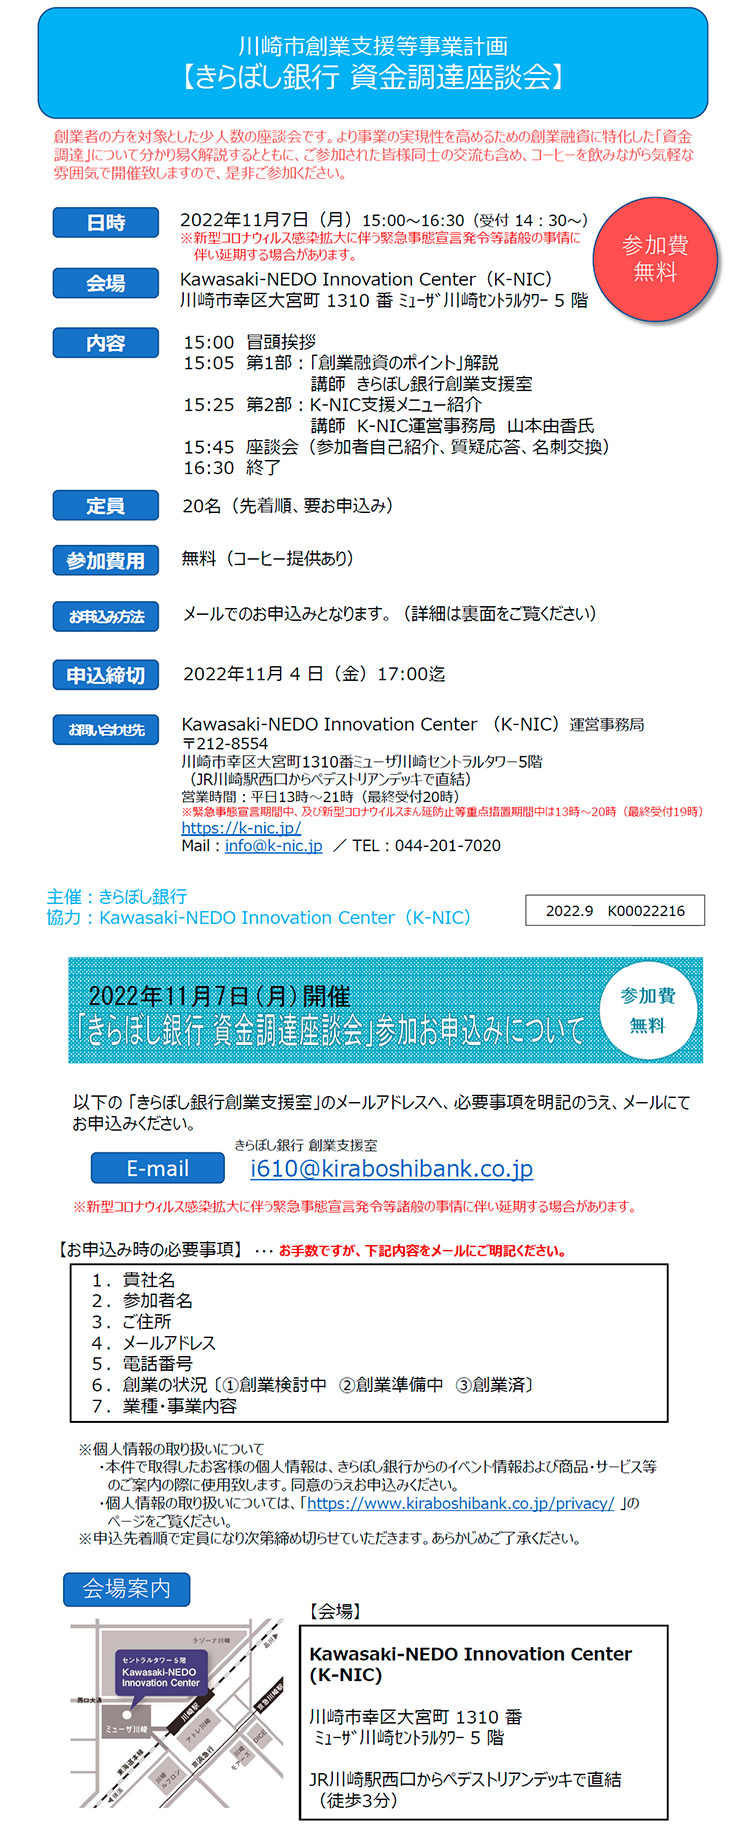 川崎市創業支援等事業計画における「きらぼし銀行 資金調達座談会」の開催について